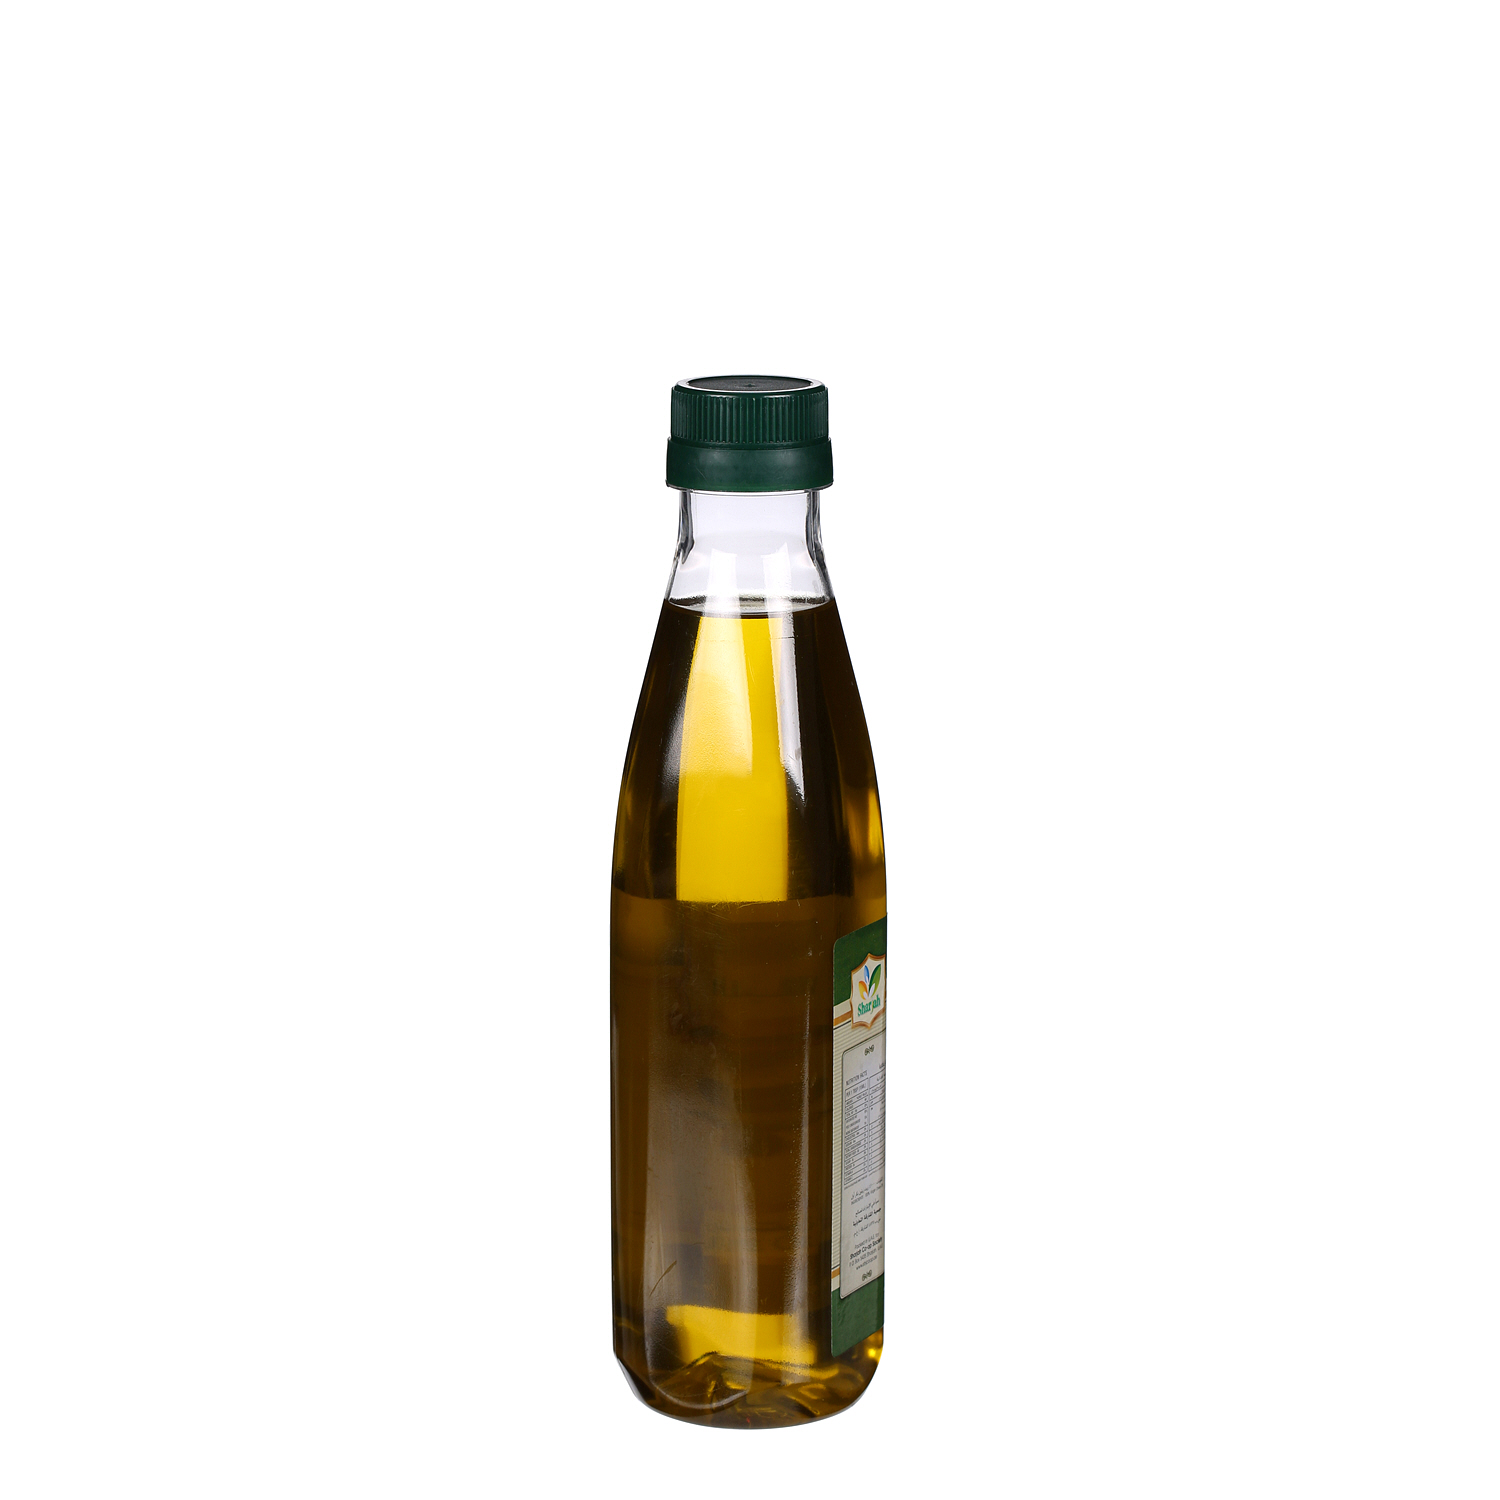 Sharjah Coop Virgin Olive Oil 500ml